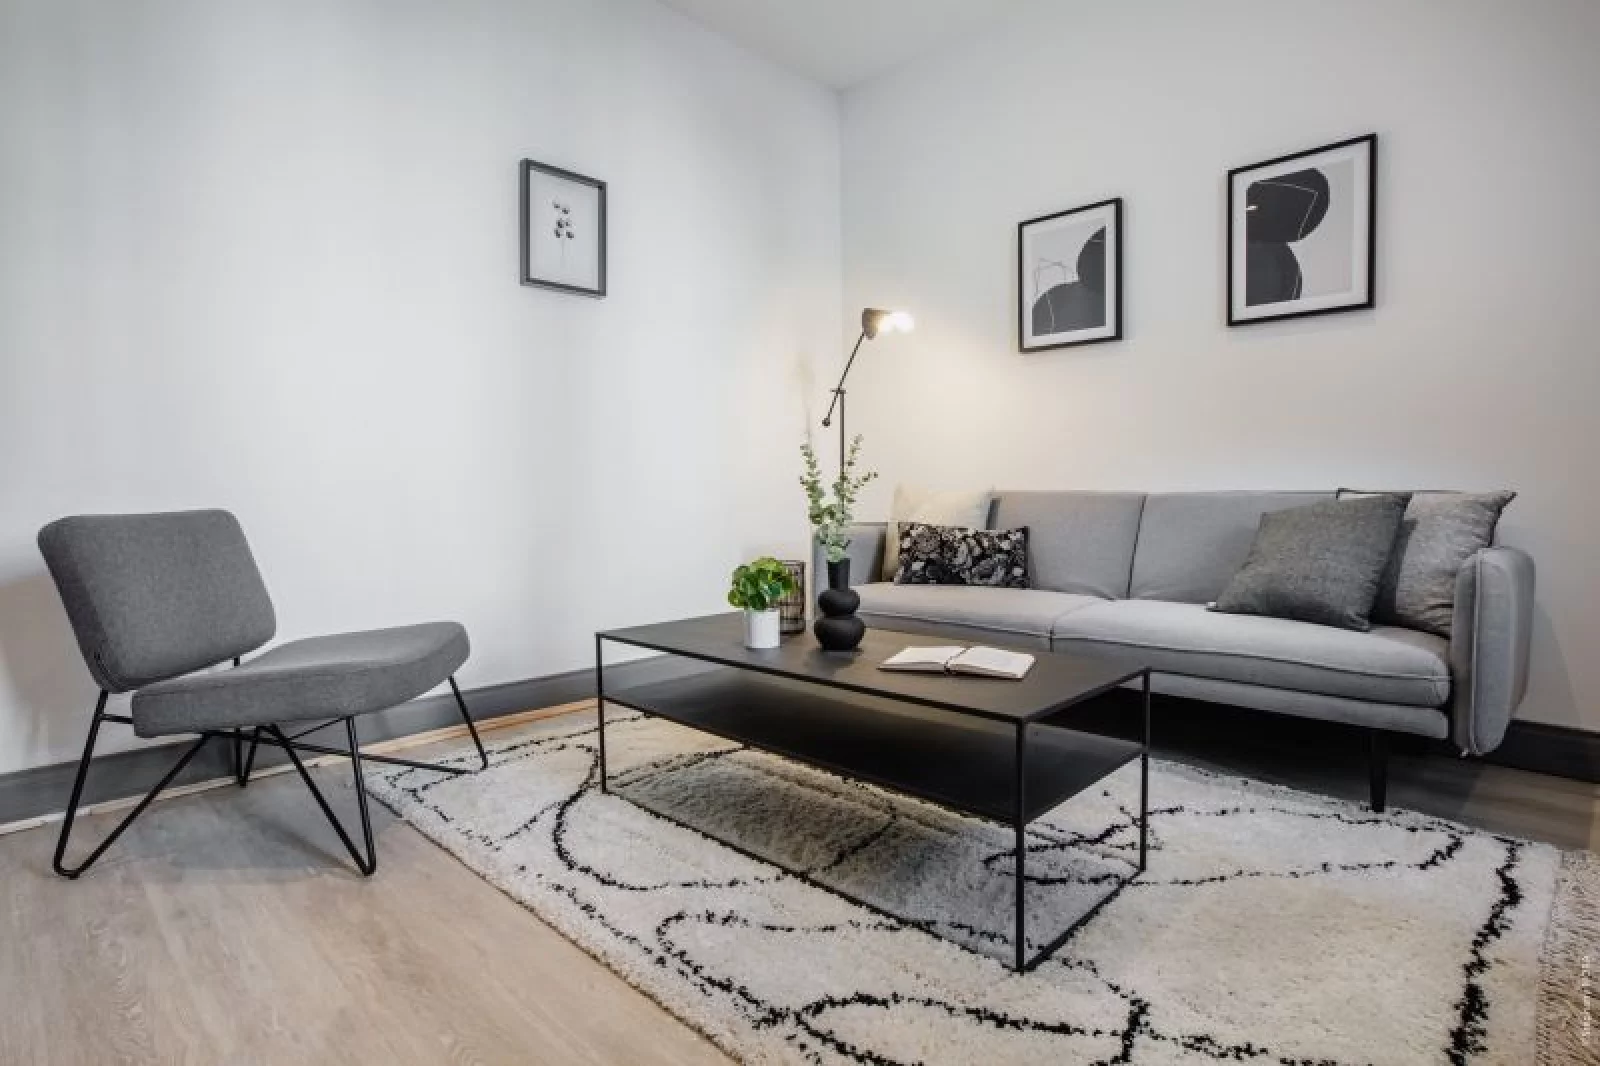 Location appartement meublé 3 pièces 64m² (Bordeaux - centre)